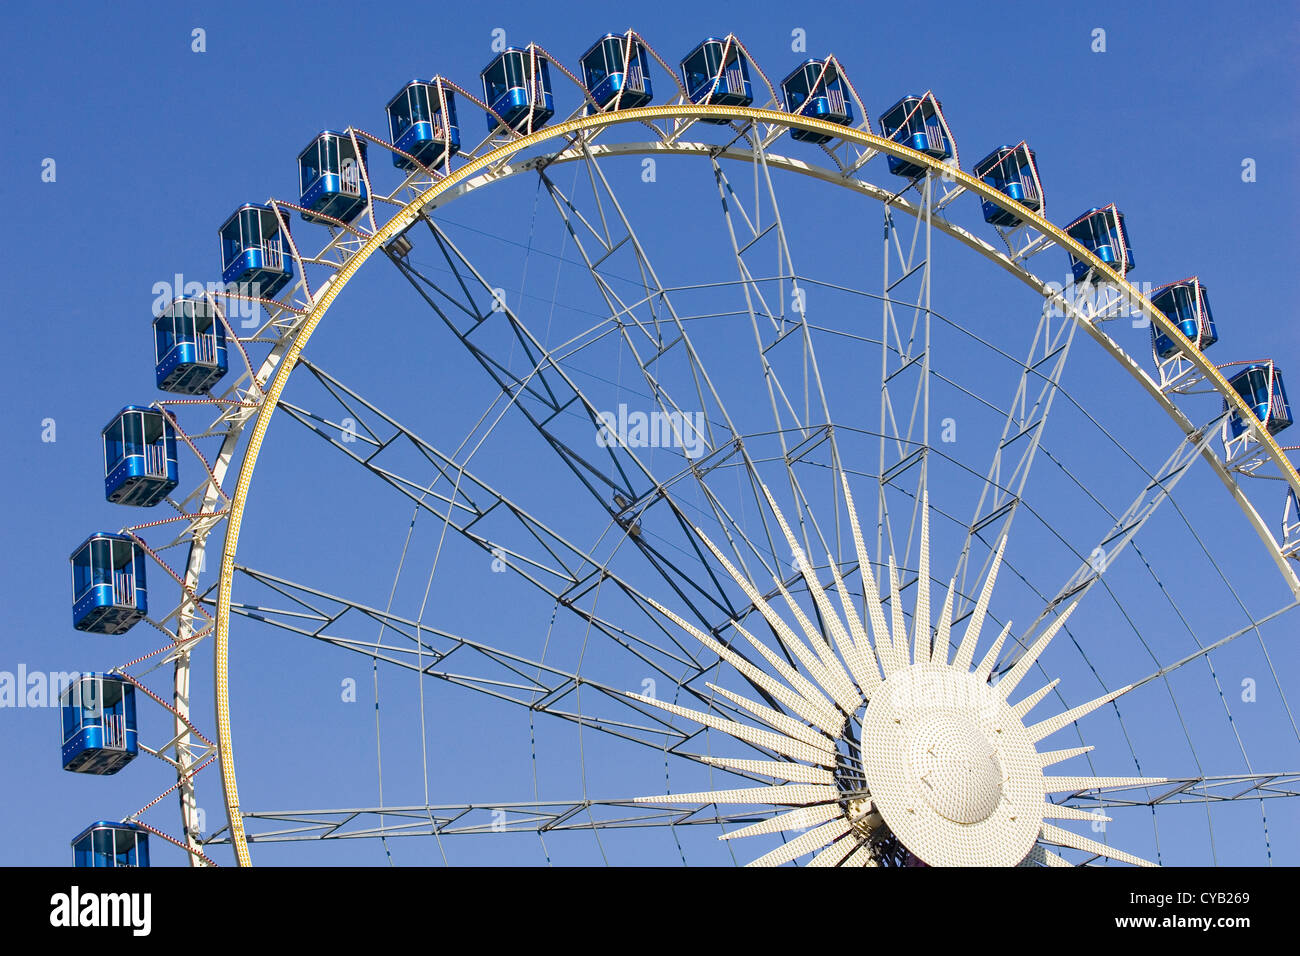 europe, switzerland, zurich, ferris wheel Stock Photo